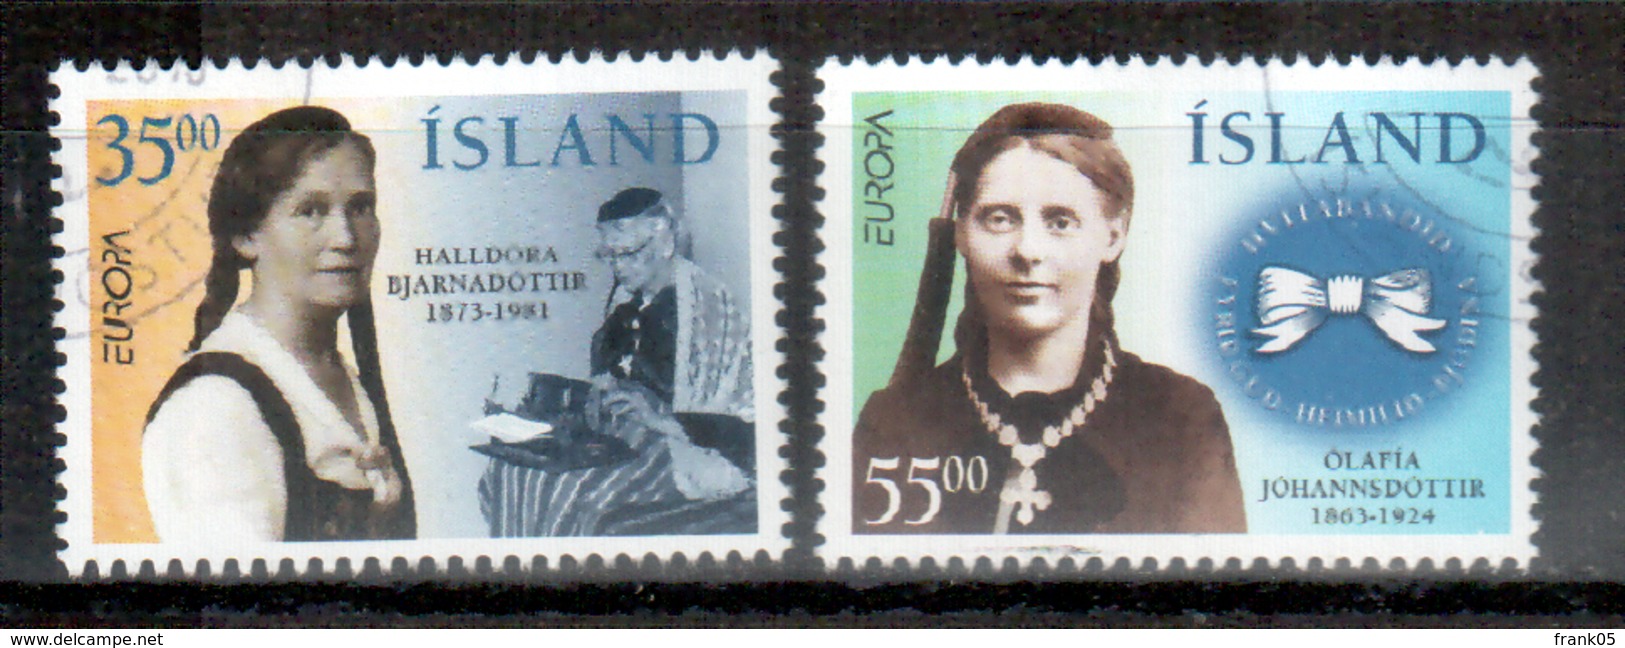 Island / Iceland / Islande 1996 Satz/set EUROPA Gestempelt/used - 1996